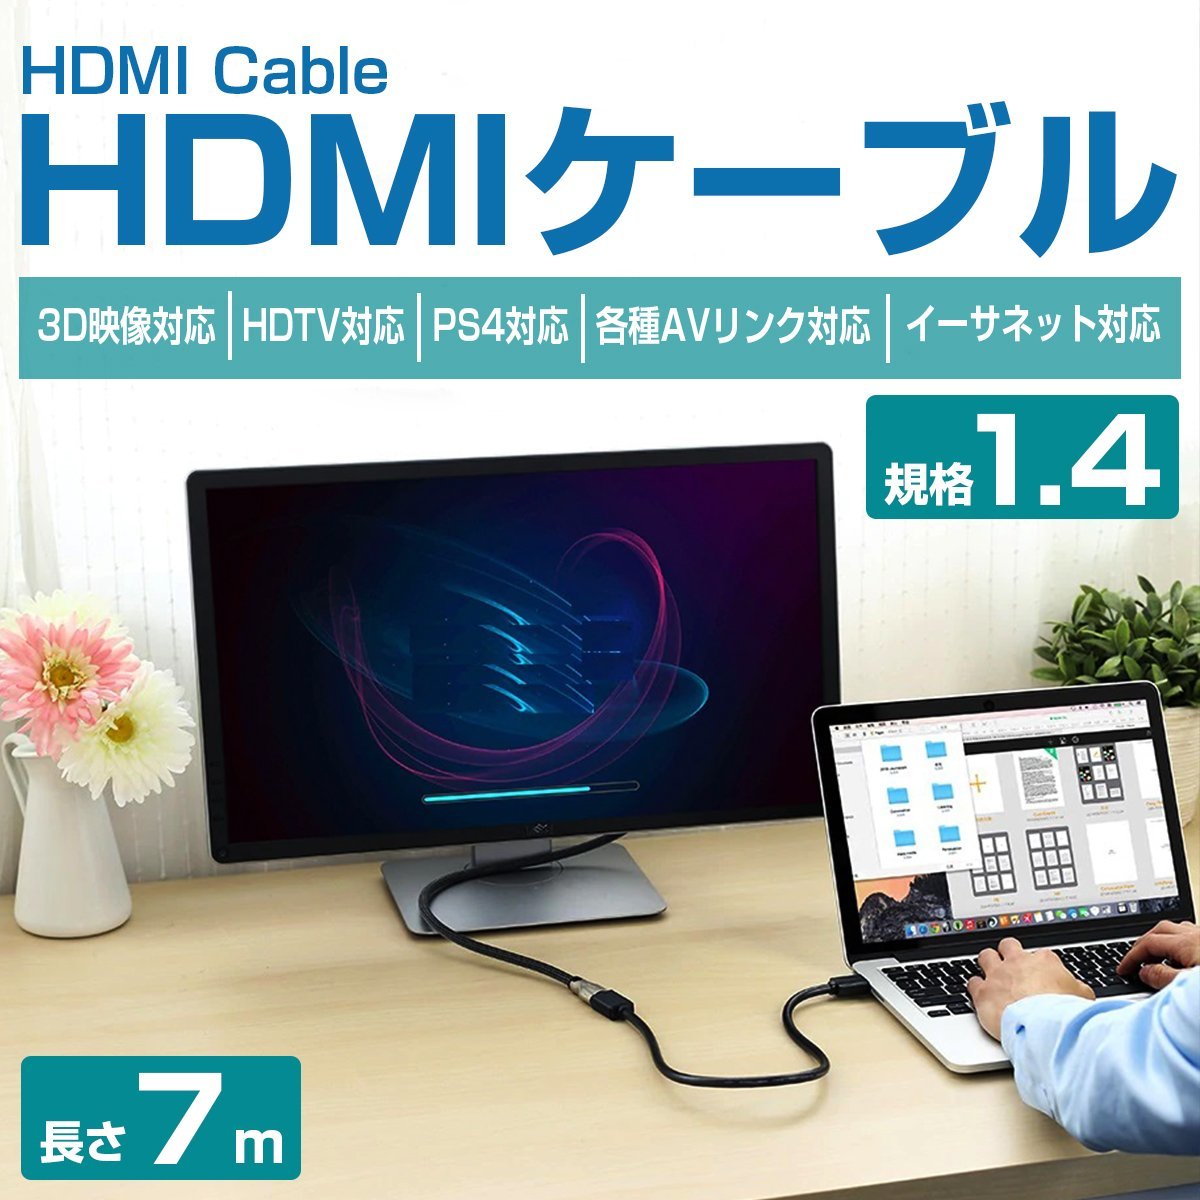 【新品即納】HDMIケーブル 7m 700cm 3D対応/金メッキ仕様 ハイスピード 1.4規格 テレビ パソコン モニター フルハイビジョン対応_cab-005-s